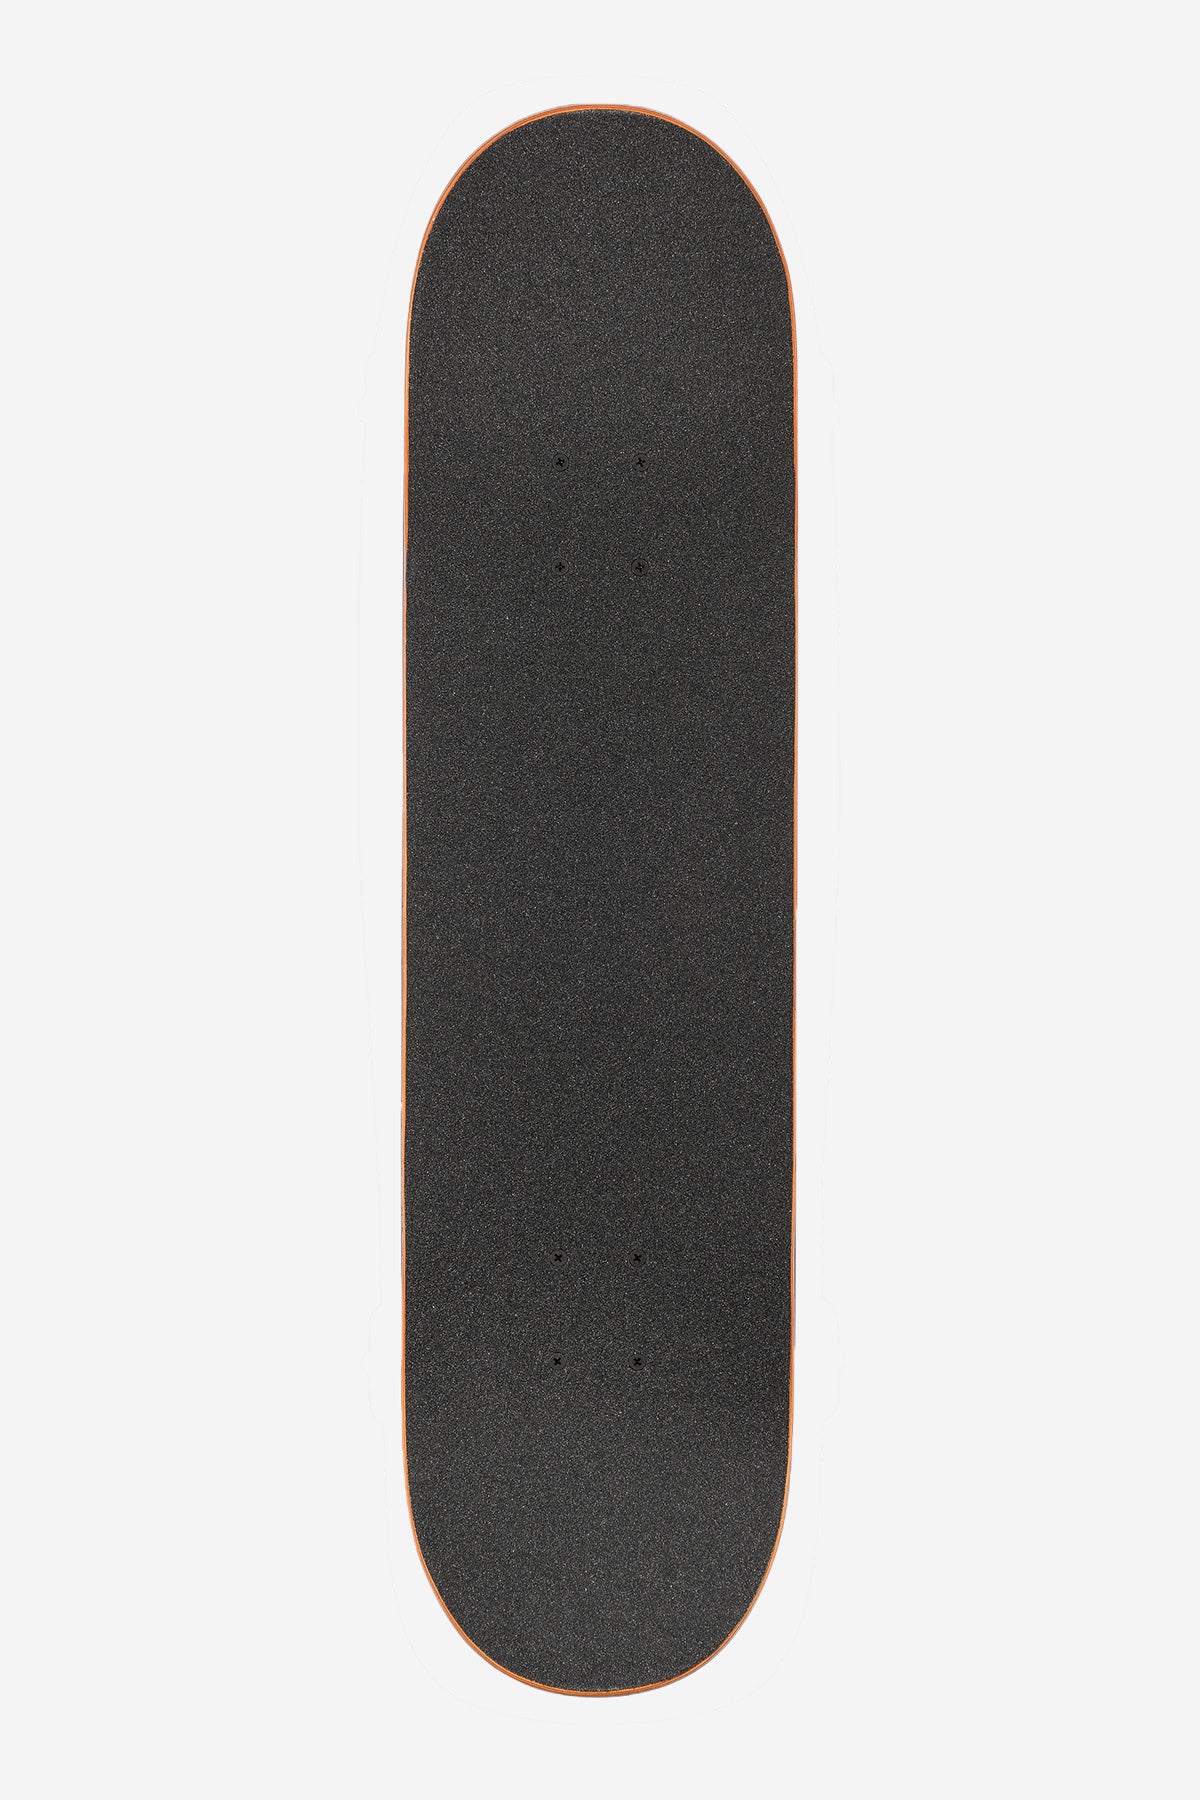 G1 Hard Luck - White/Black - 8.0" Complete Skateboard